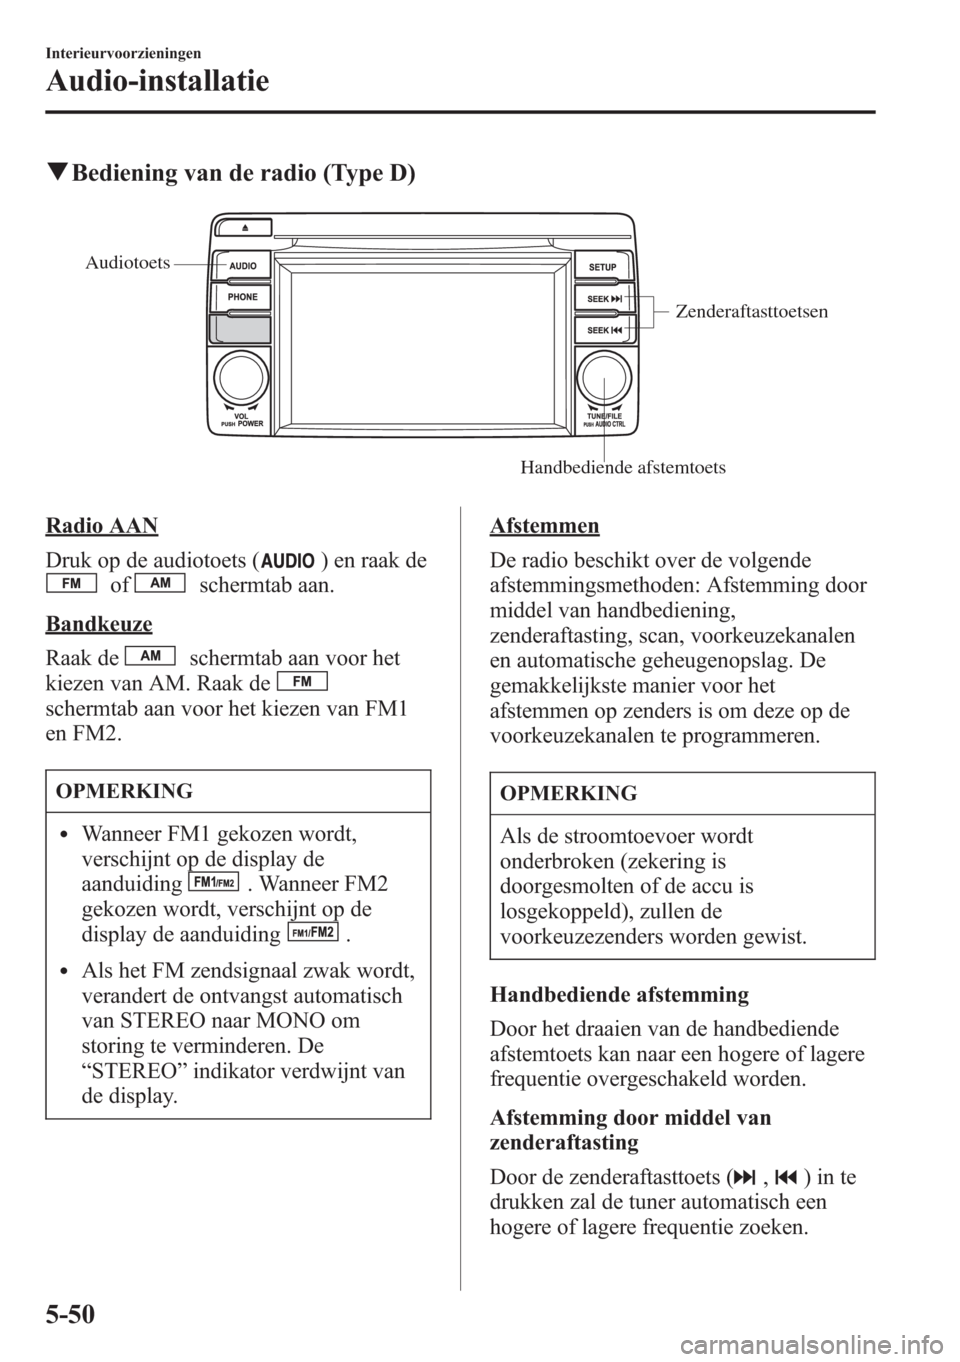 MAZDA MODEL CX-5 2013  Handleiding (in Dutch) qBediening van de radio (Type D)
Zenderaftasttoetsen
Handbediende afstemtoets Audiotoets
Radio AAN
Druk op de audiotoets (
) en raak de
ofschermtab aan.
Bandkeuze
Raak de
schermtab aan voor het
kiezen